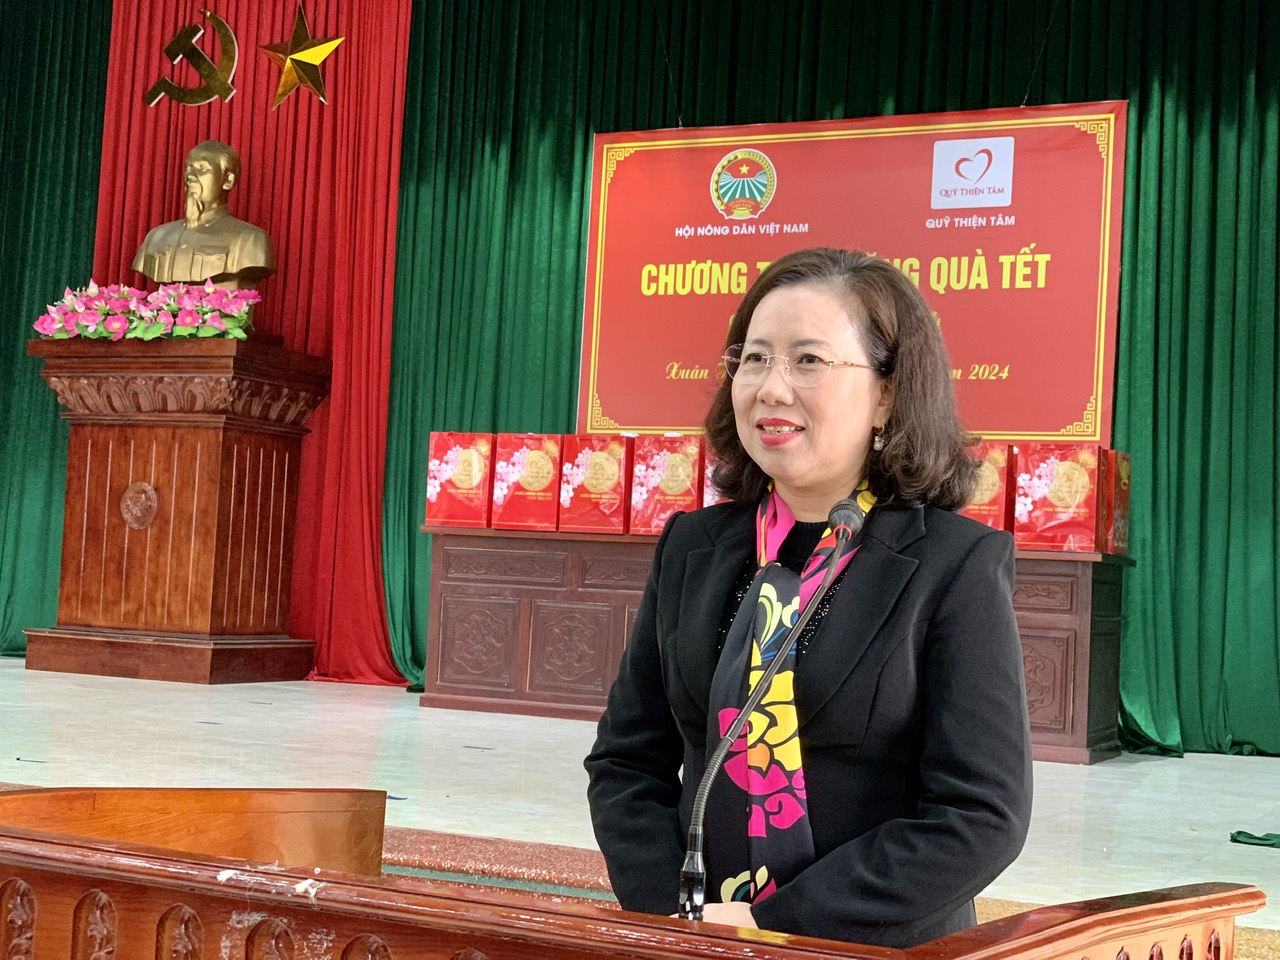 Phó Chủ tịch Hội Nông dân Việt Nam Bùi Thị Thơm tặng quà tết cho nông dân khó khăn tại Nam Định- Ảnh 2.